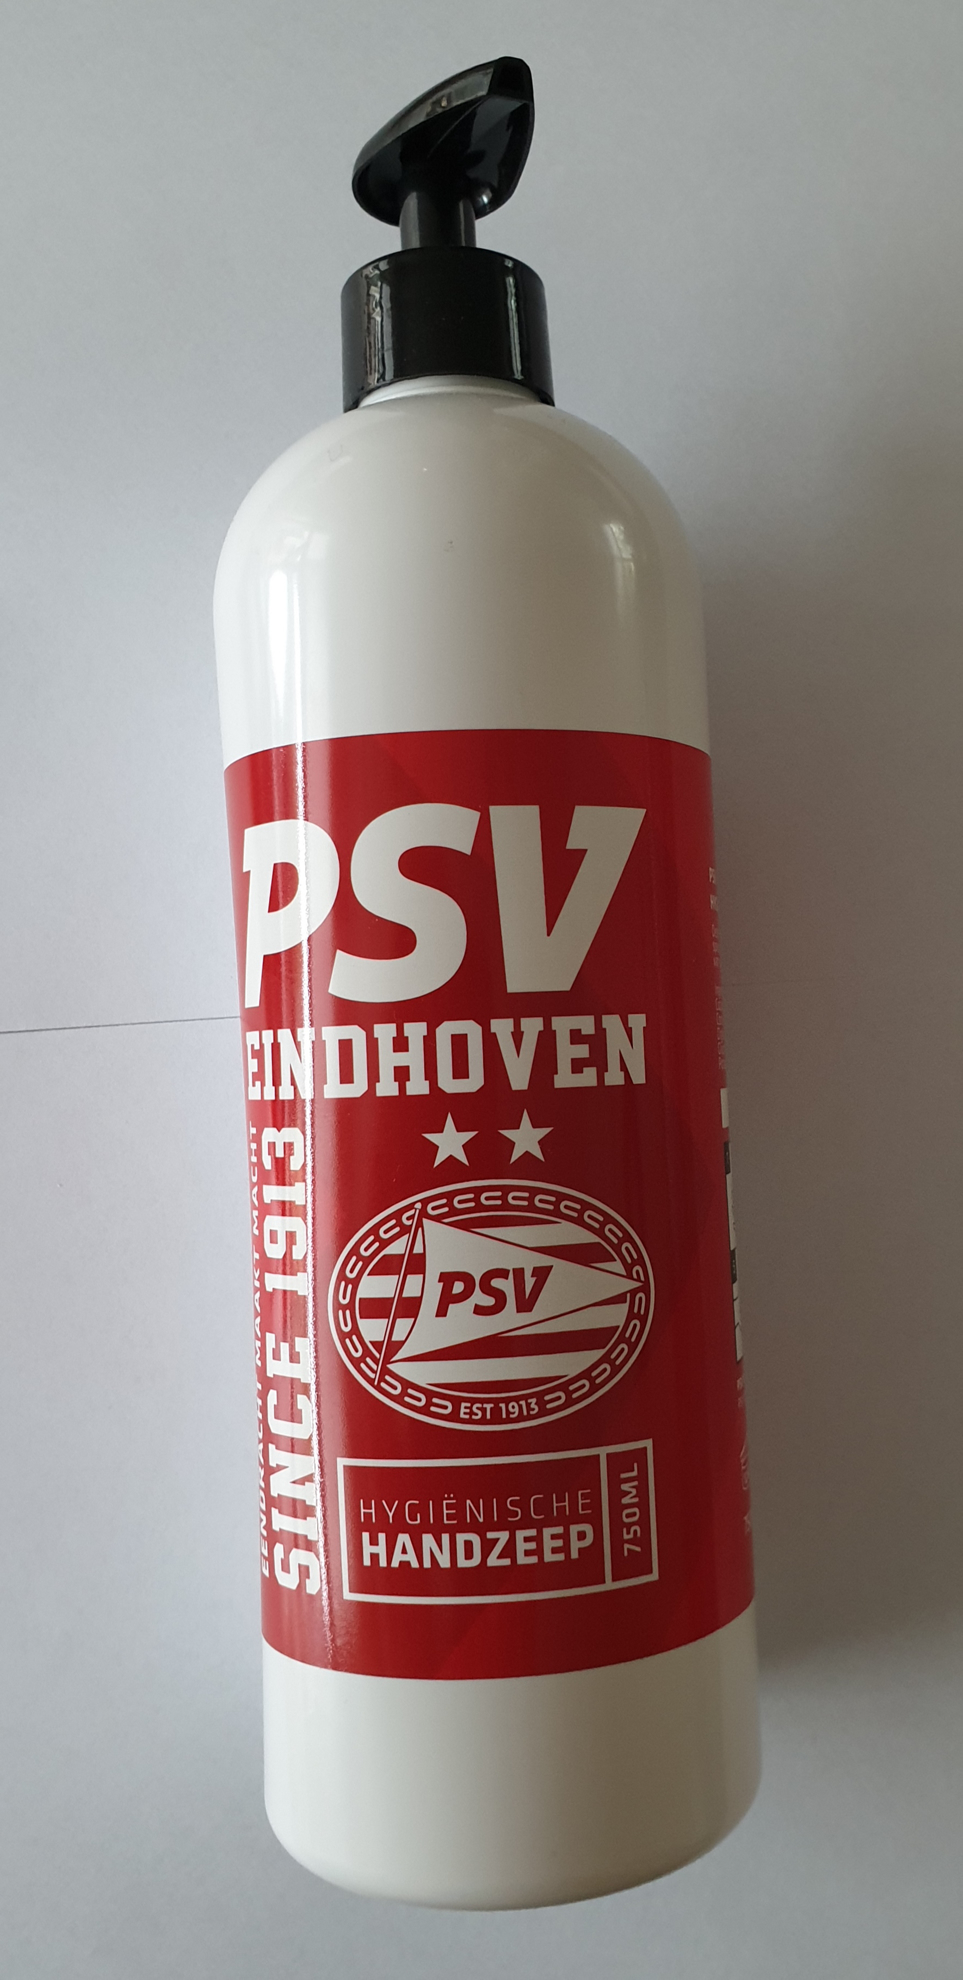 Picture of PSV Hygiënische Handzeep met Pomp